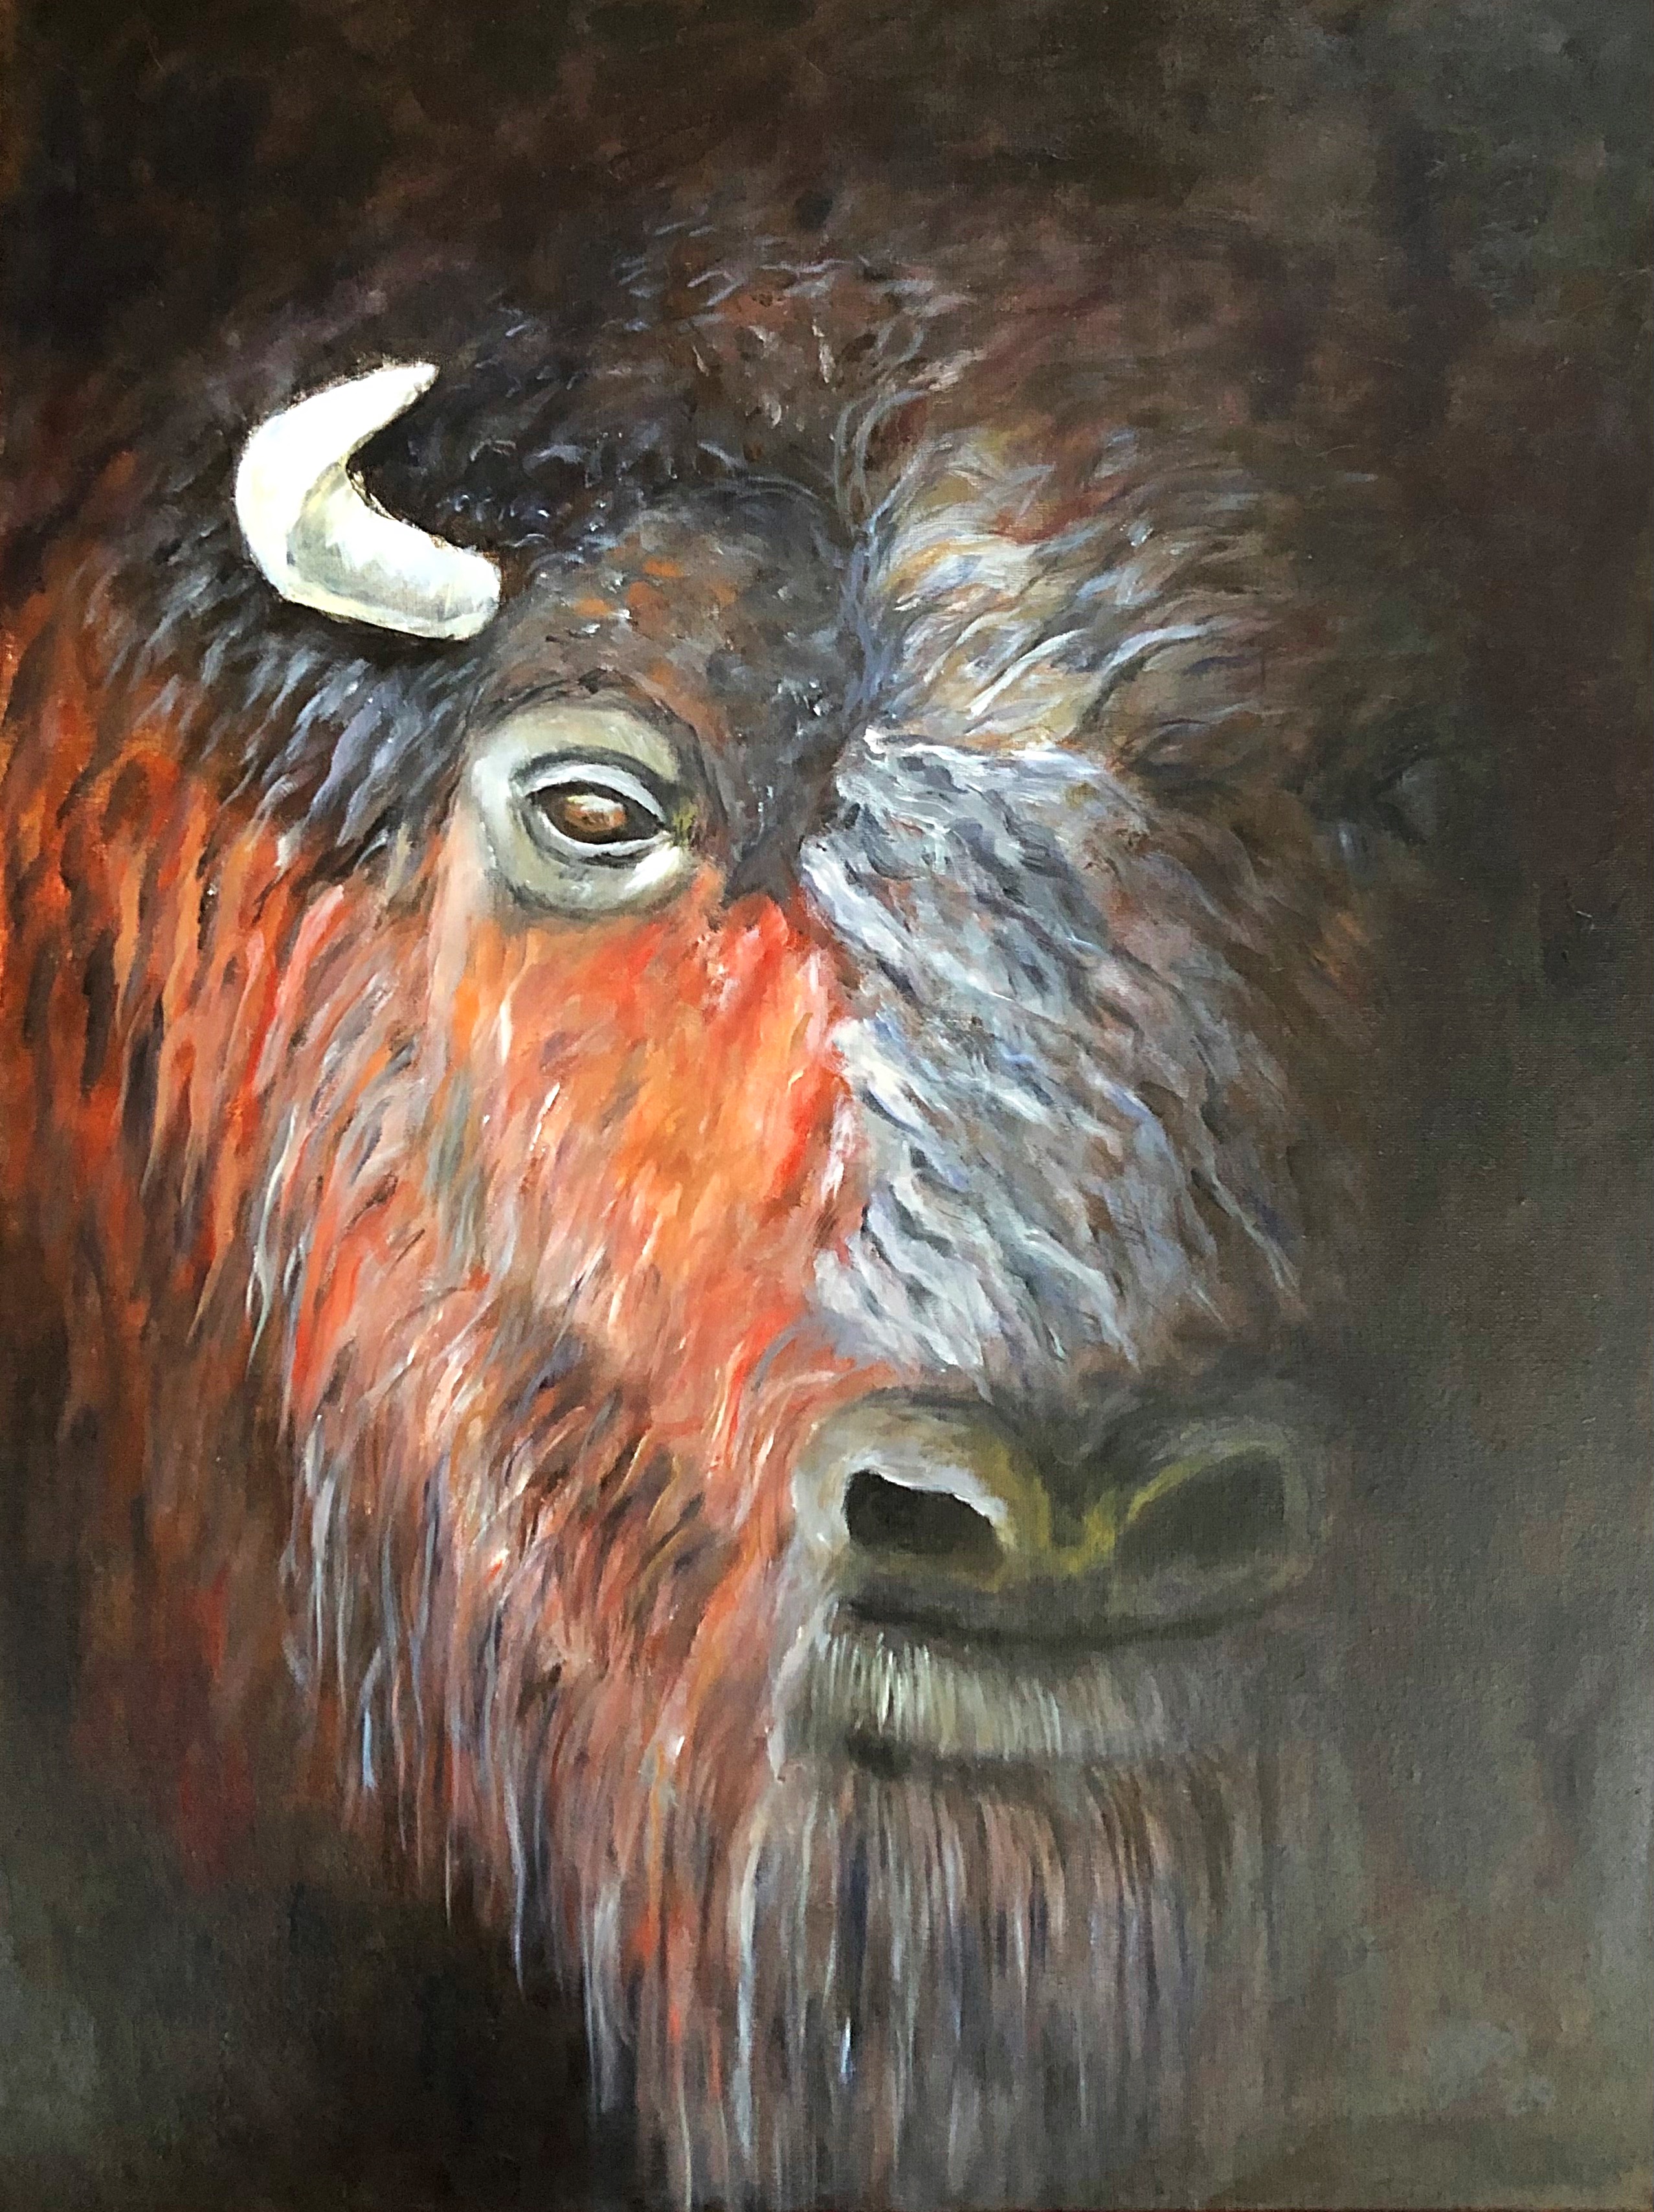 "Buffalo", Mixed Media, 18x24, @soniapuente_artwork